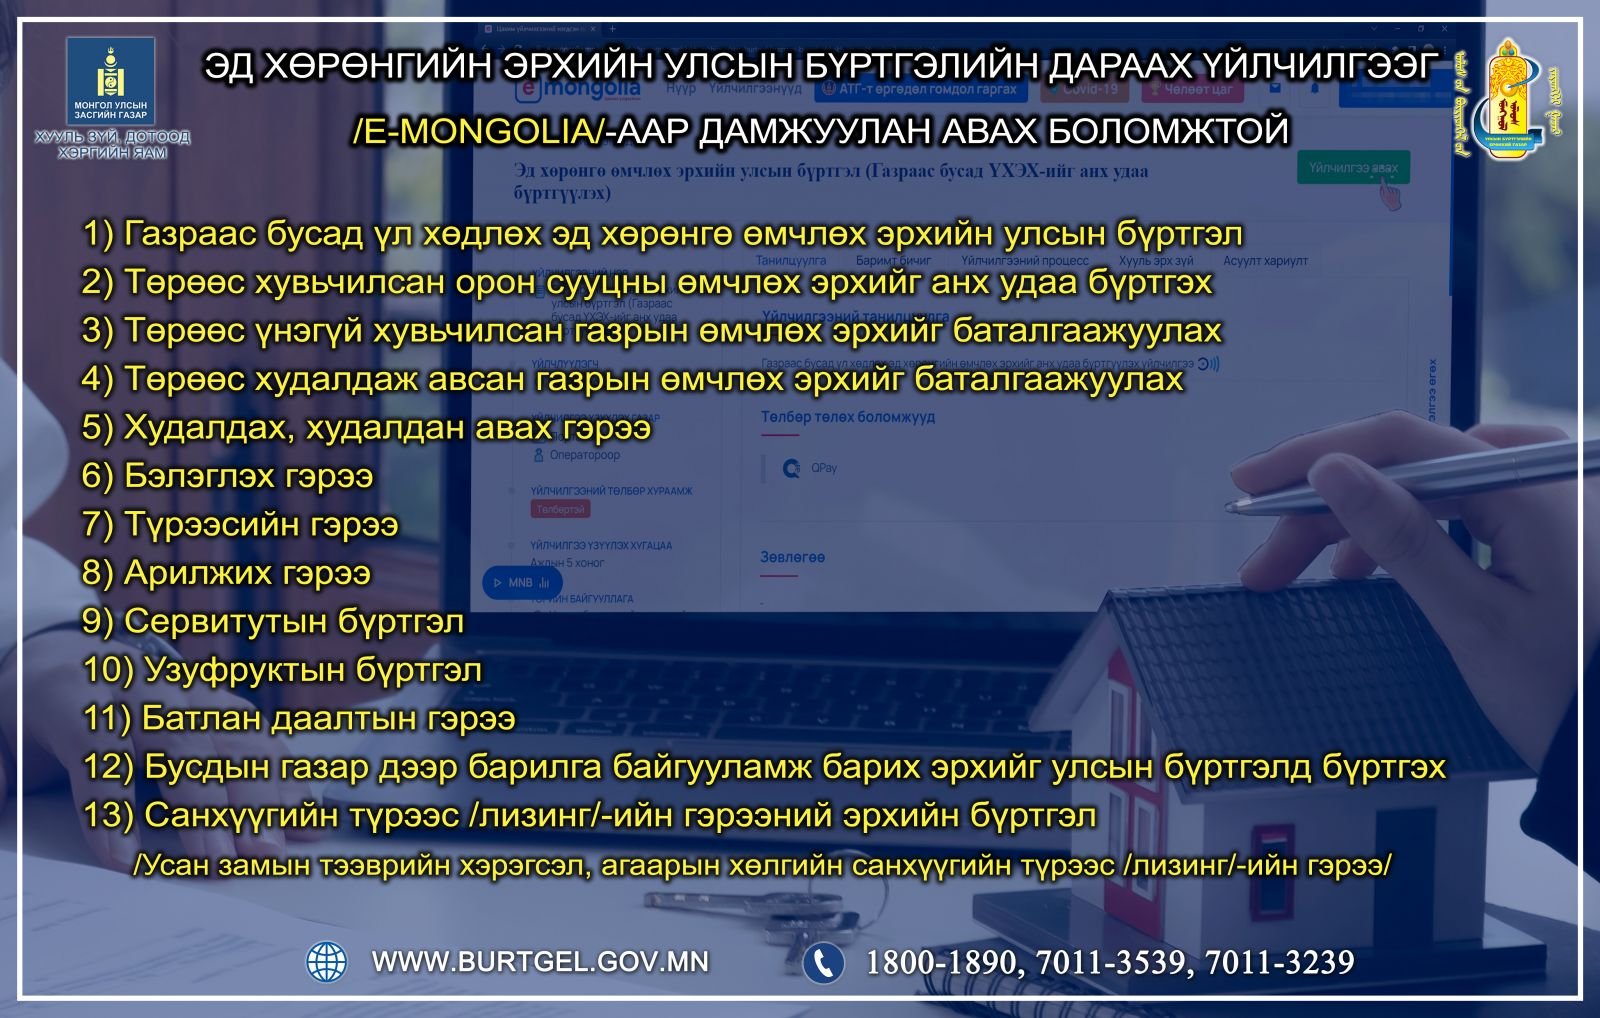 E-mongolia системээр дамжуулан Эд хөрөнгийн эрхийн улсын бүртгэлийн дараах үйлчилгээг цахимаар авах боломжтой